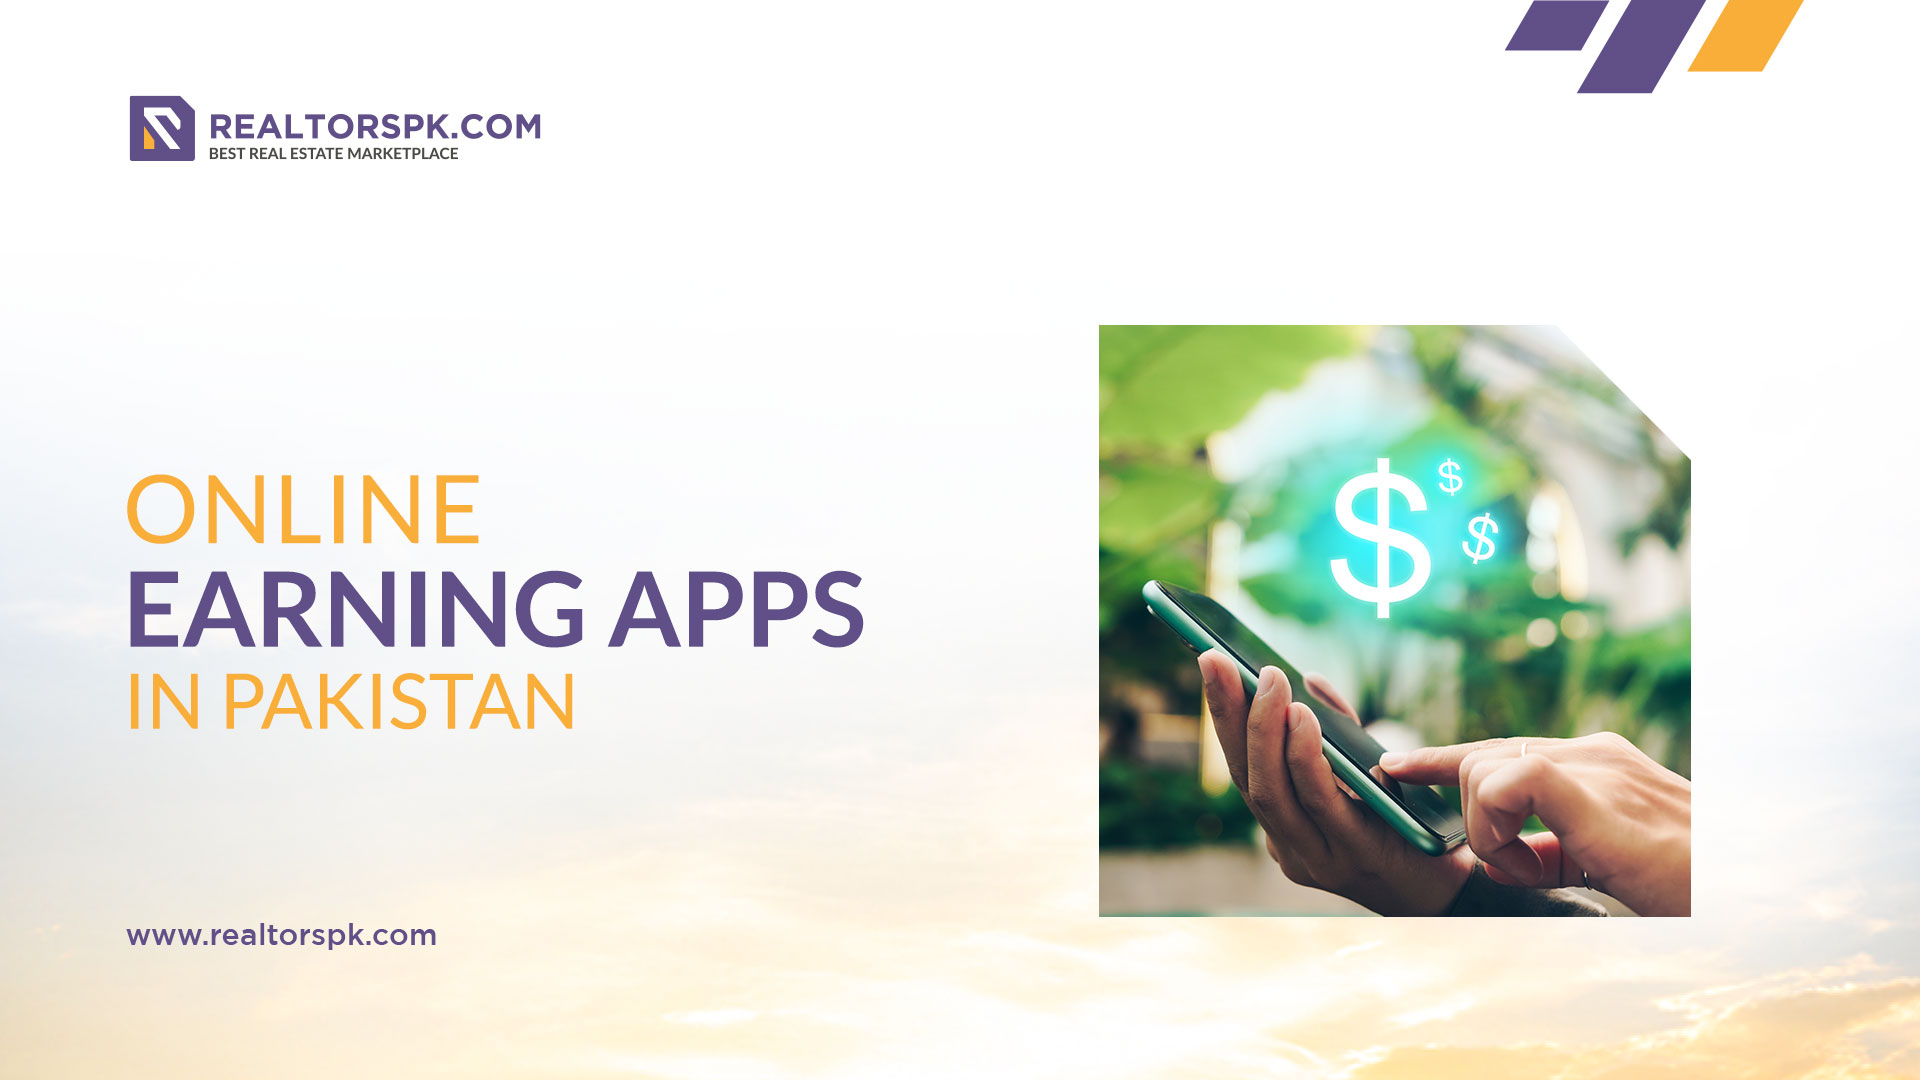 Online Earning Apps in Pakistan- Realtorspk